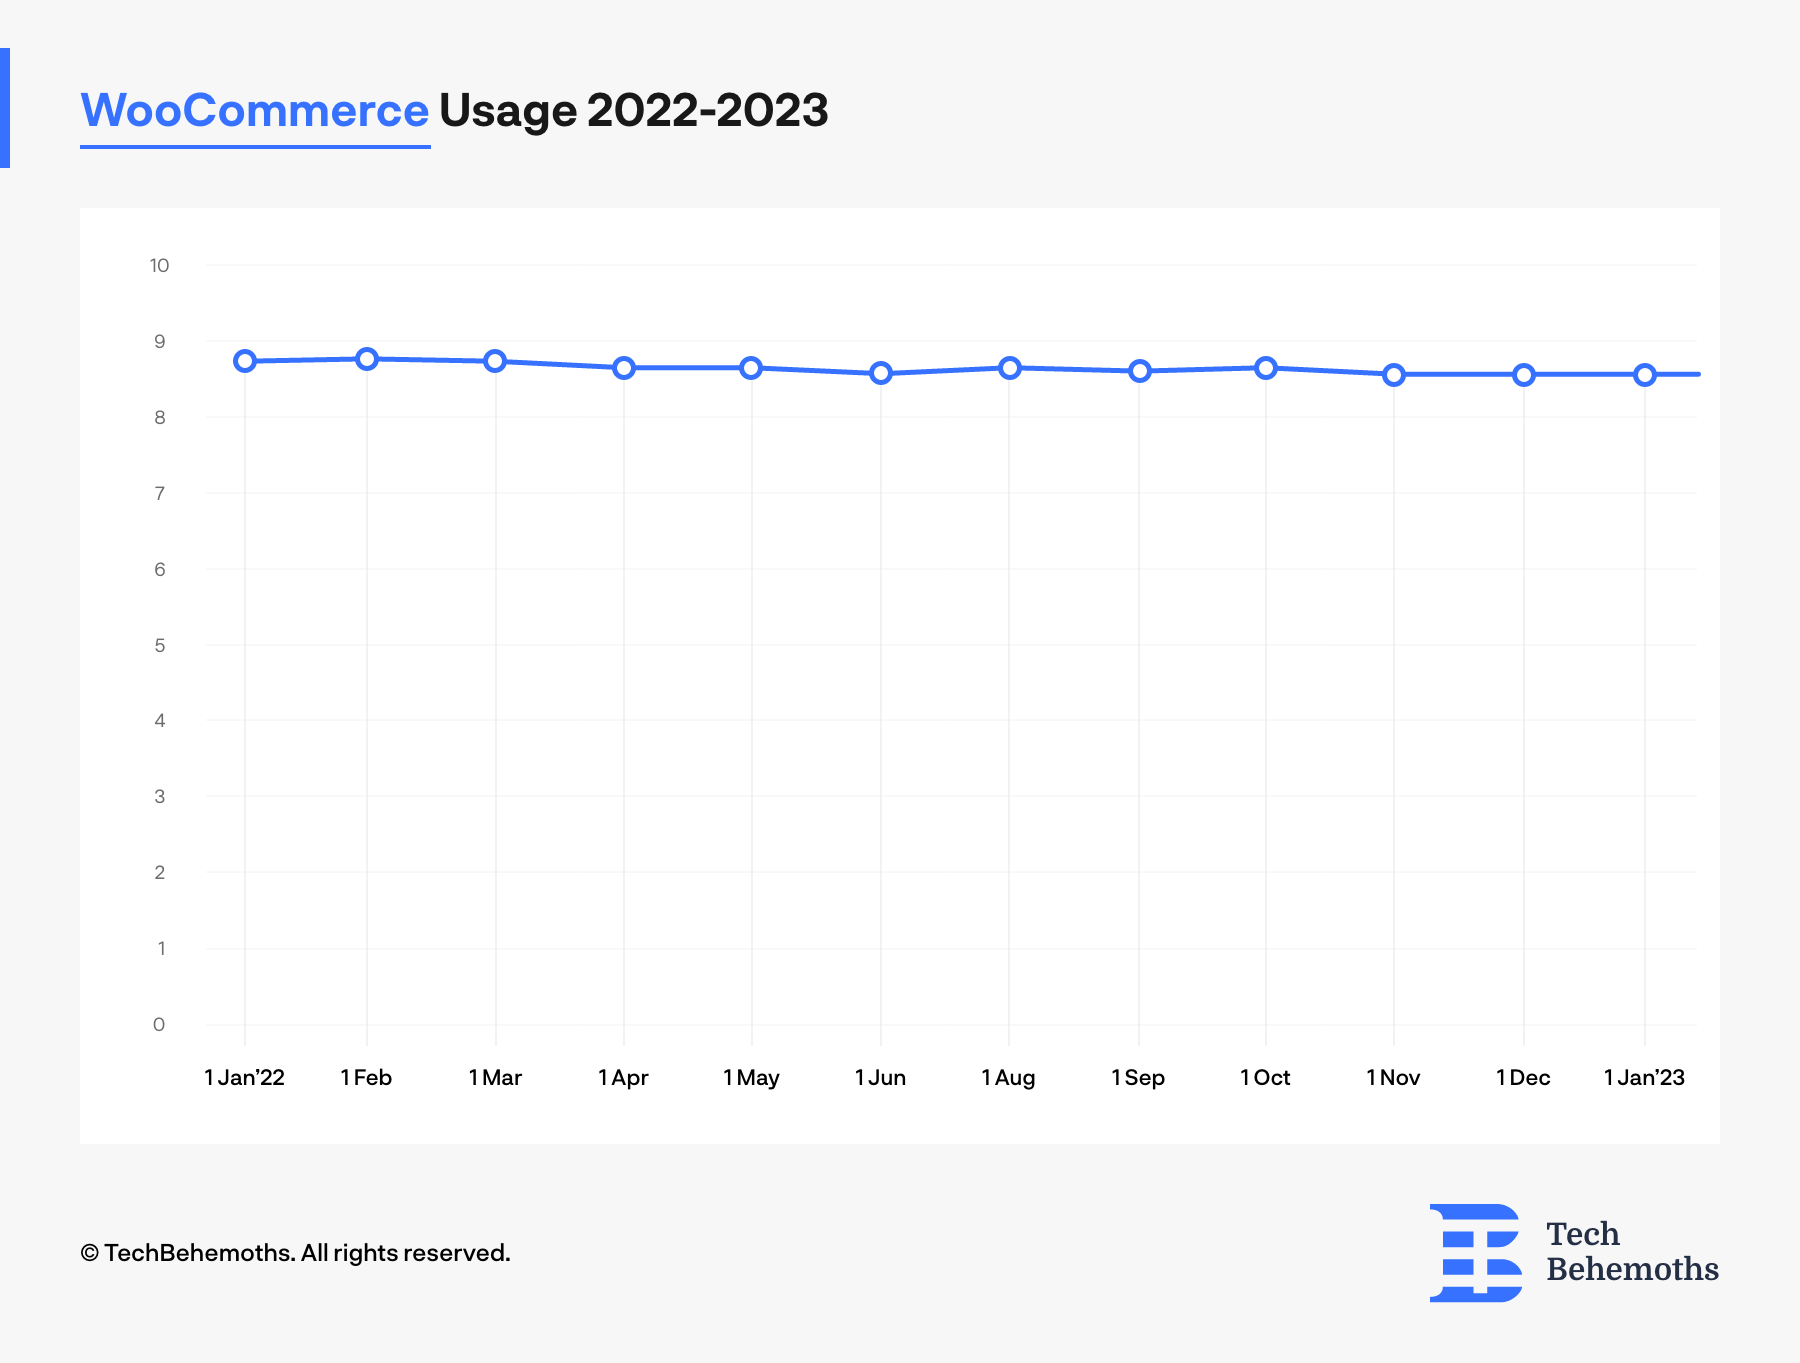 woocommerce usage between 2022-2023 Q1